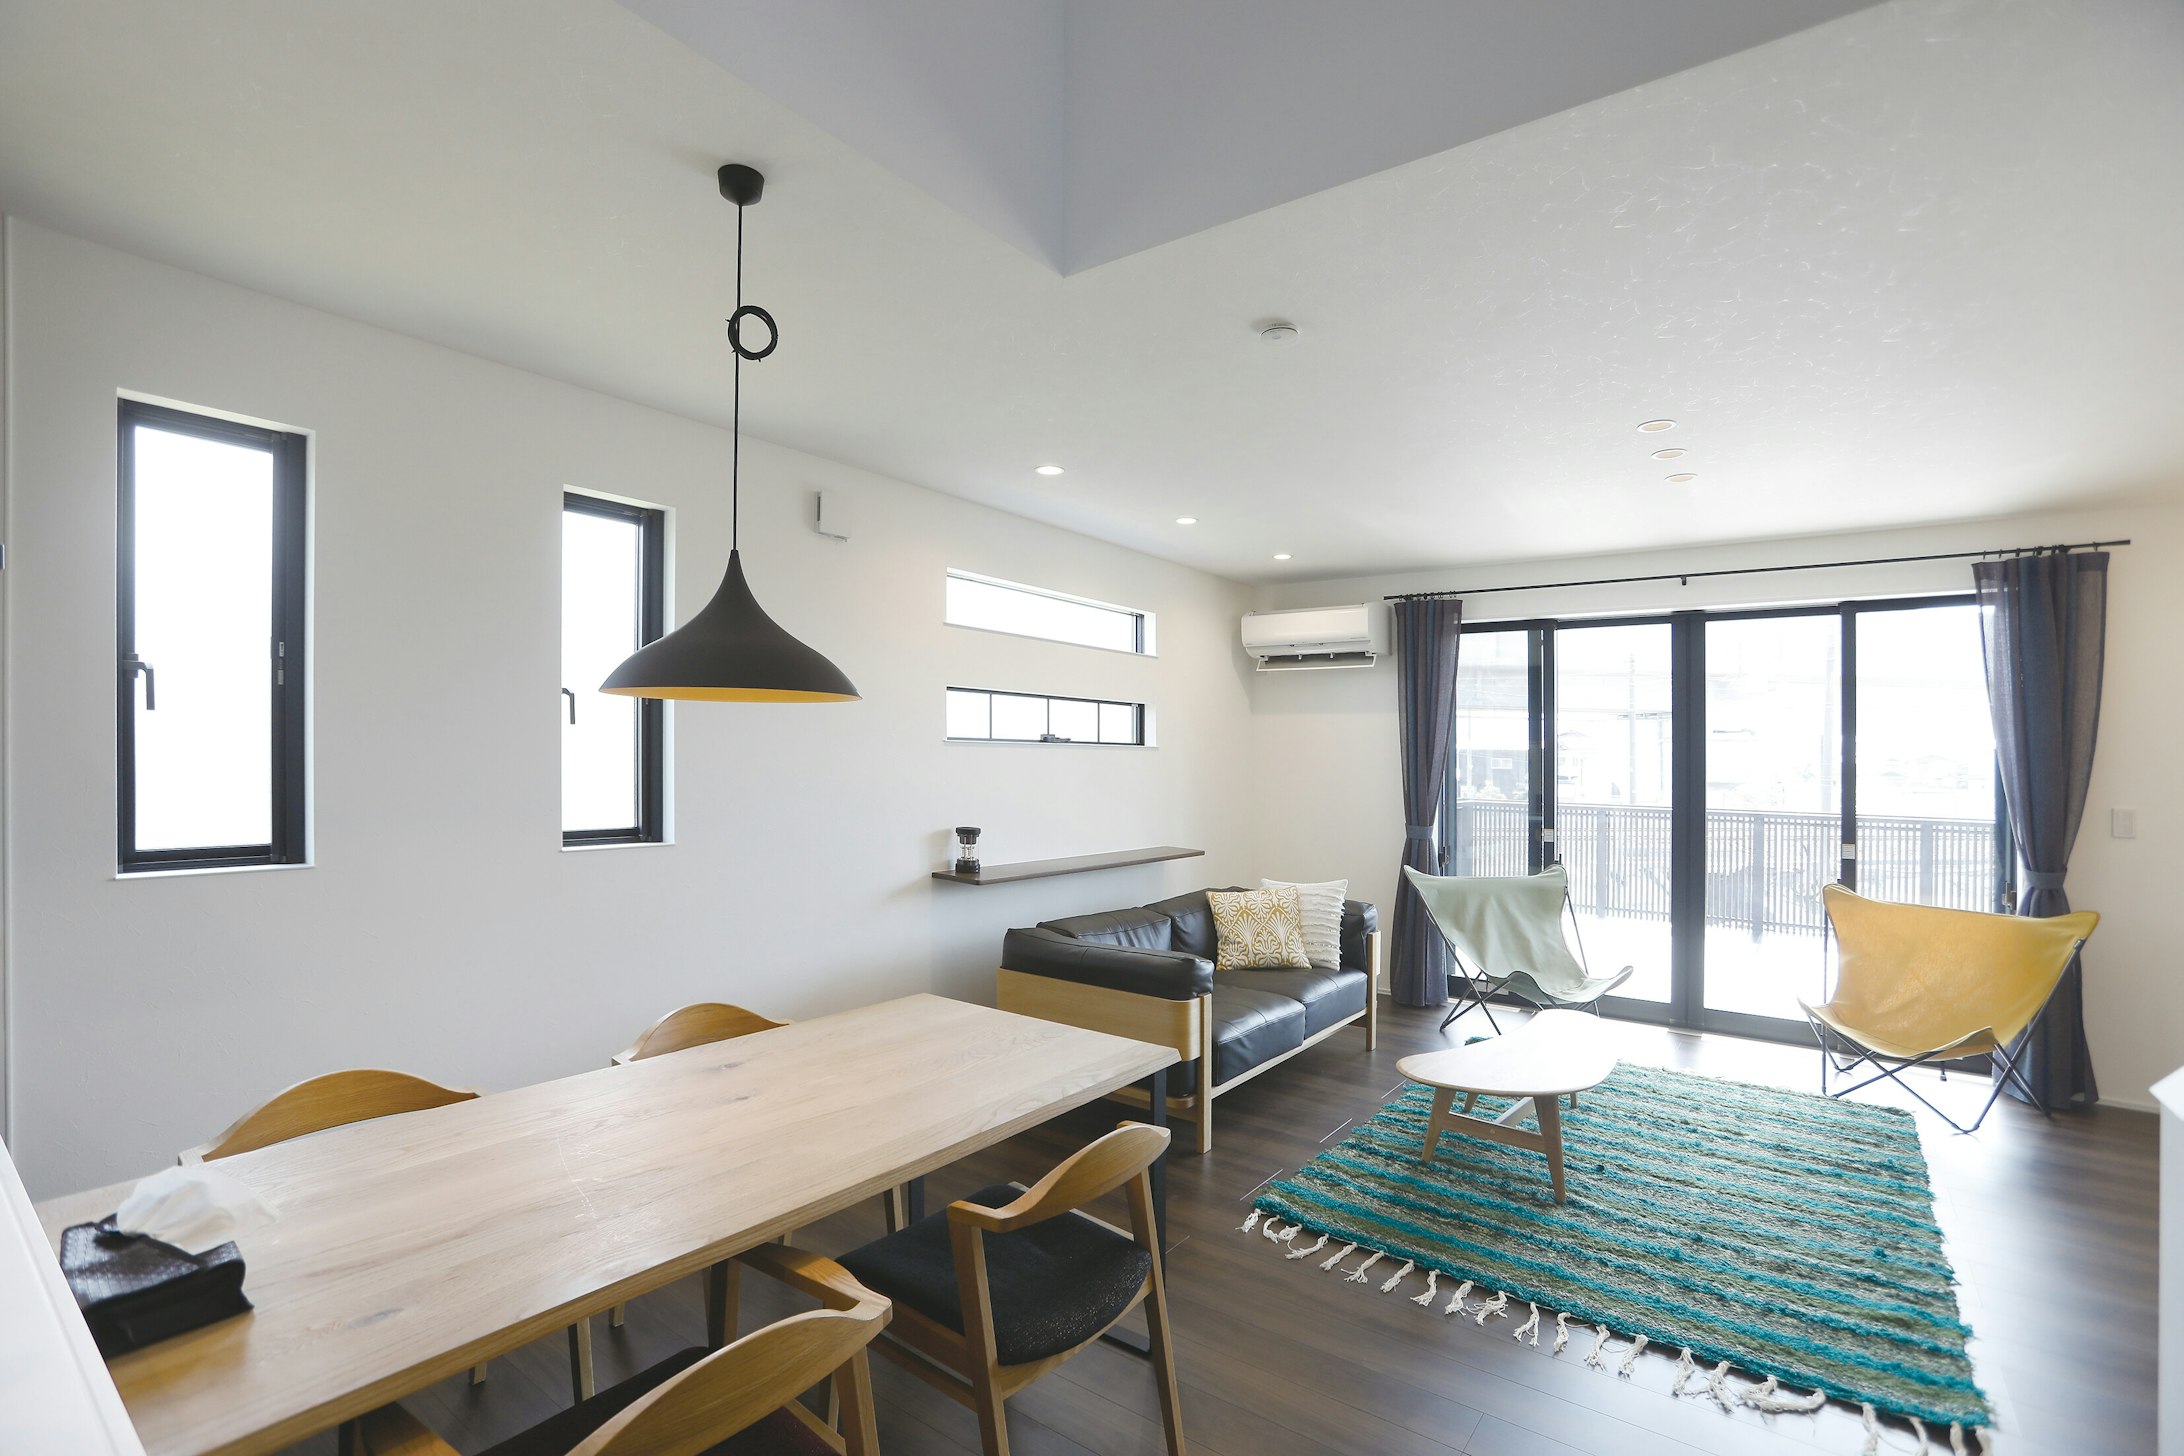 【石川】新日本ホーム_おうち時間の楽しみが広がる、2階リビングとバルコニー